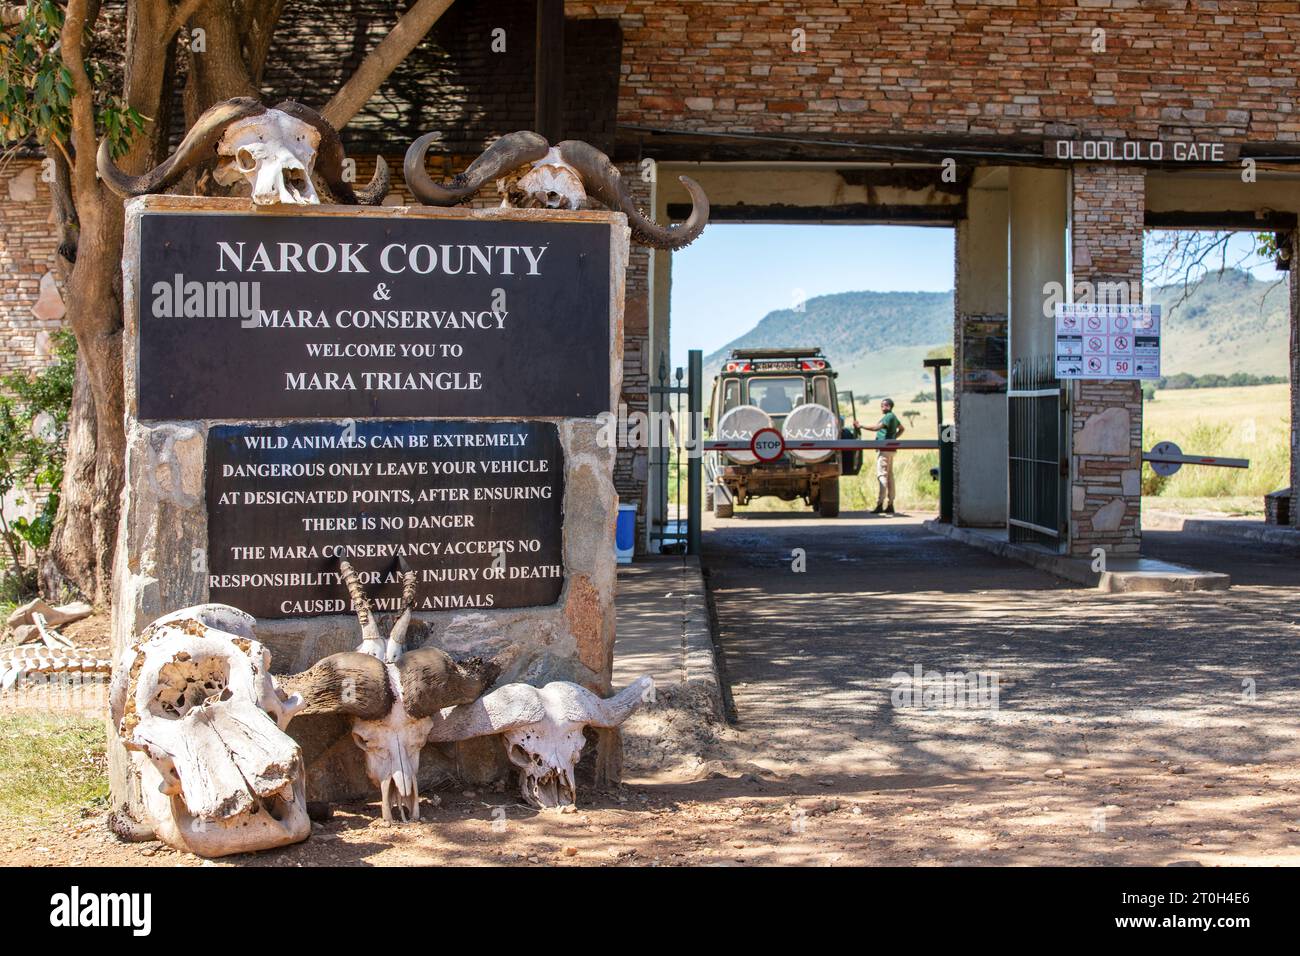 Masai Mara, Kenya - 14 février 2019 : le panneau d'entrée du triangle Masai Mara par la porte Oloololo. Les touristes doivent passer à travers la barrière et agre Banque D'Images